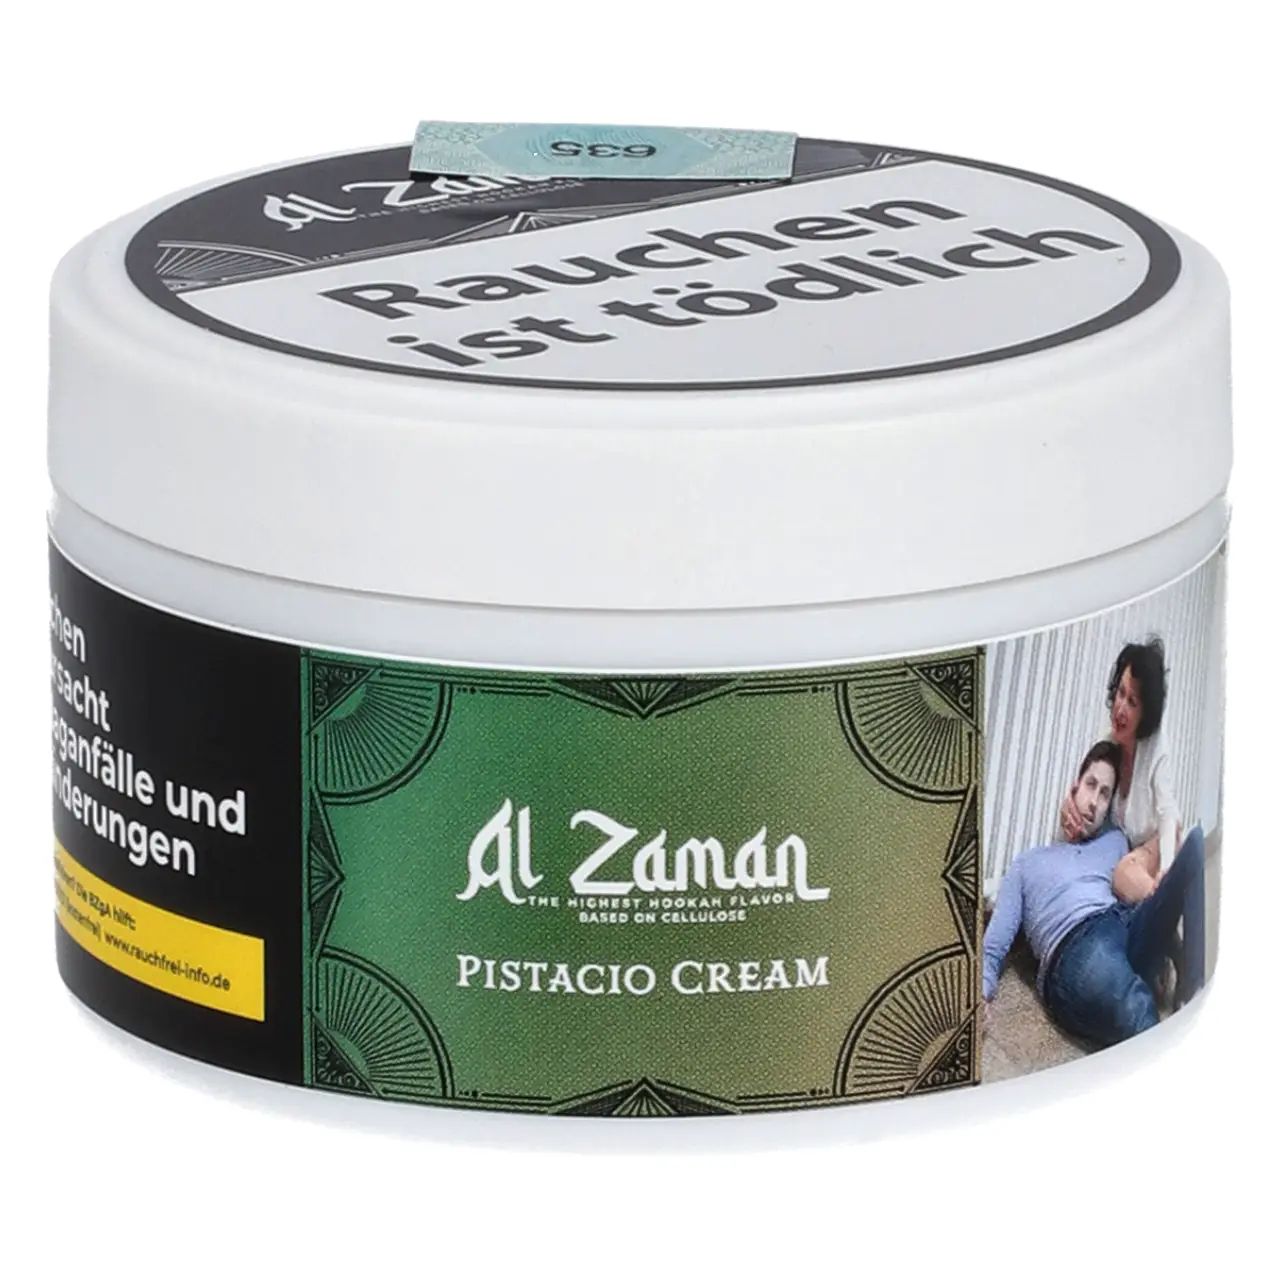 Al Zaman nikotinfreier Shisha Tabak Pistacio Cream - Pistazie Vanille Eiscreme - 25g